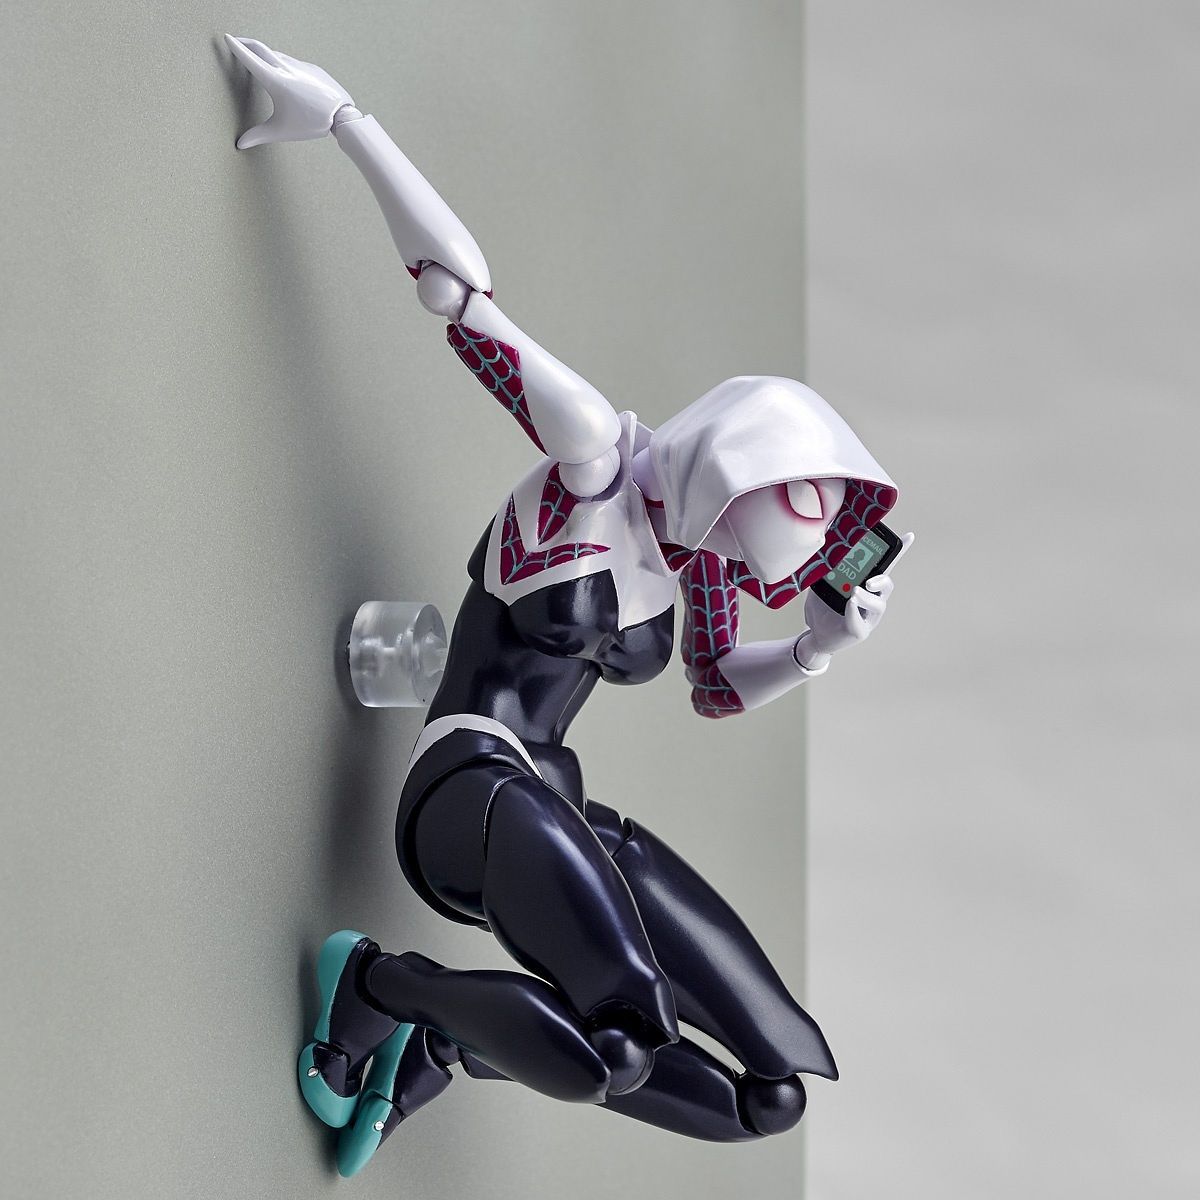 Runxizhou Dekohänger Spider-Gwen Kaiyodo Figure (1 St)